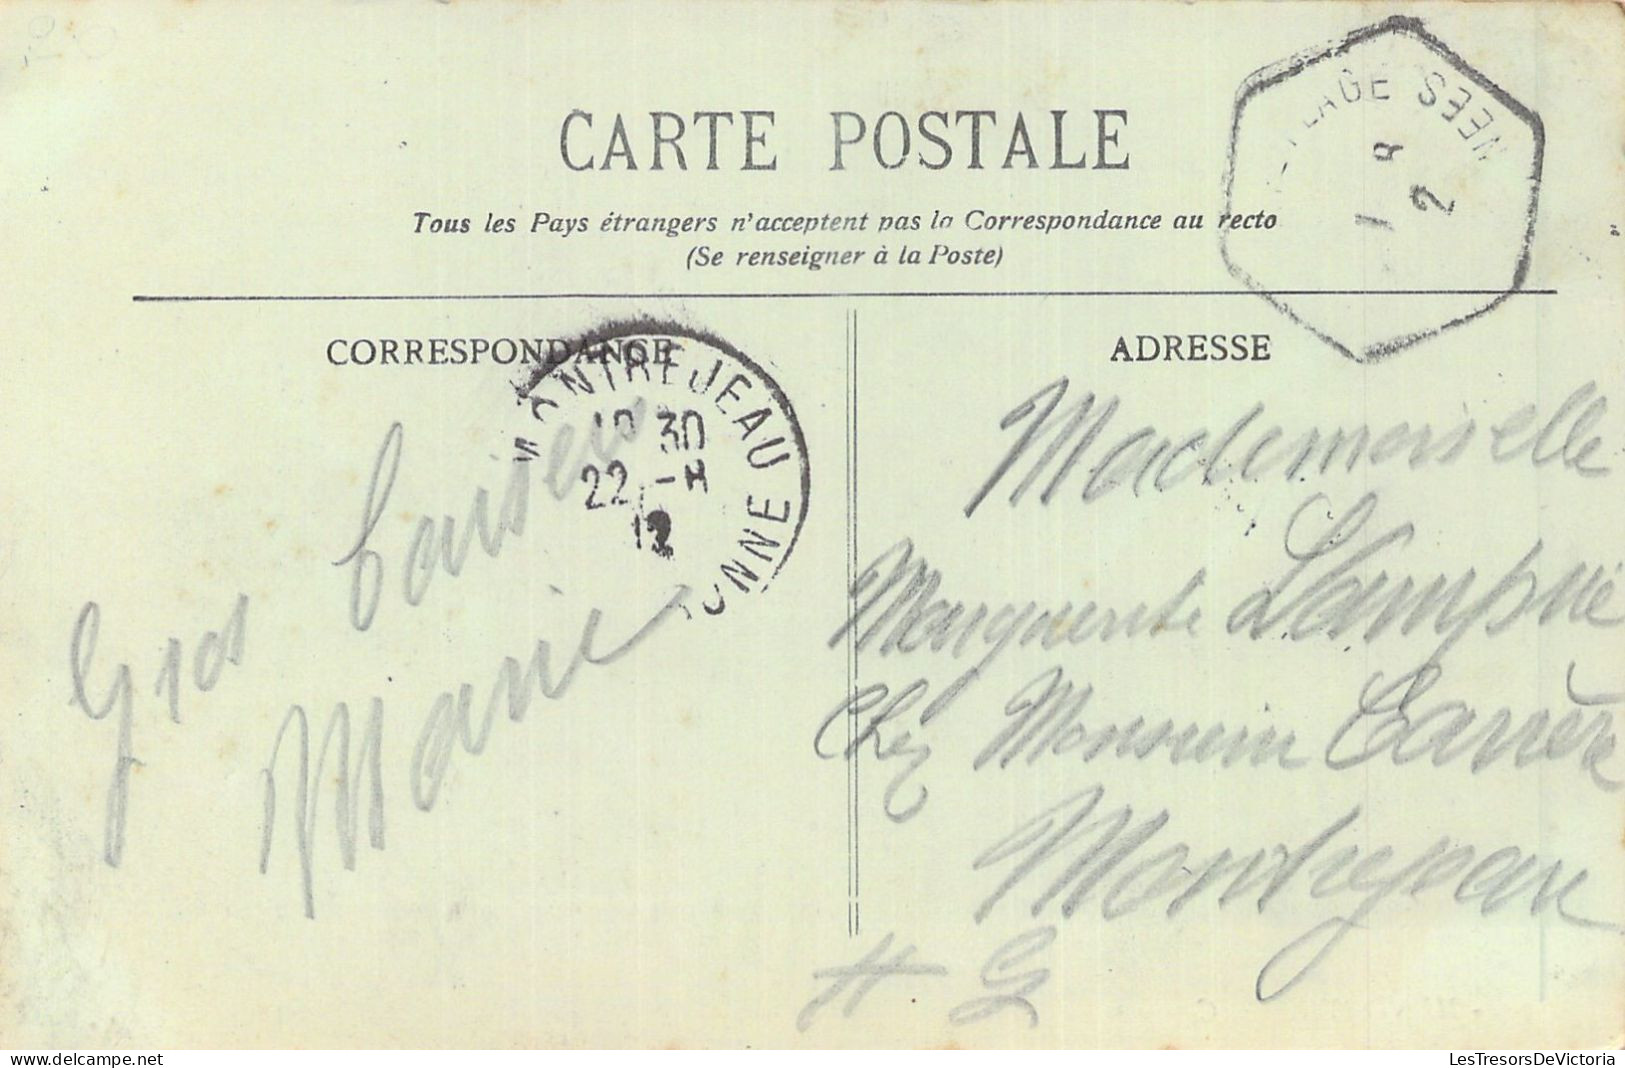 FRANCE - 20 - Hendaye - Le Casino Et Les Bains - Carte Postale Ancienne - Autres & Non Classés